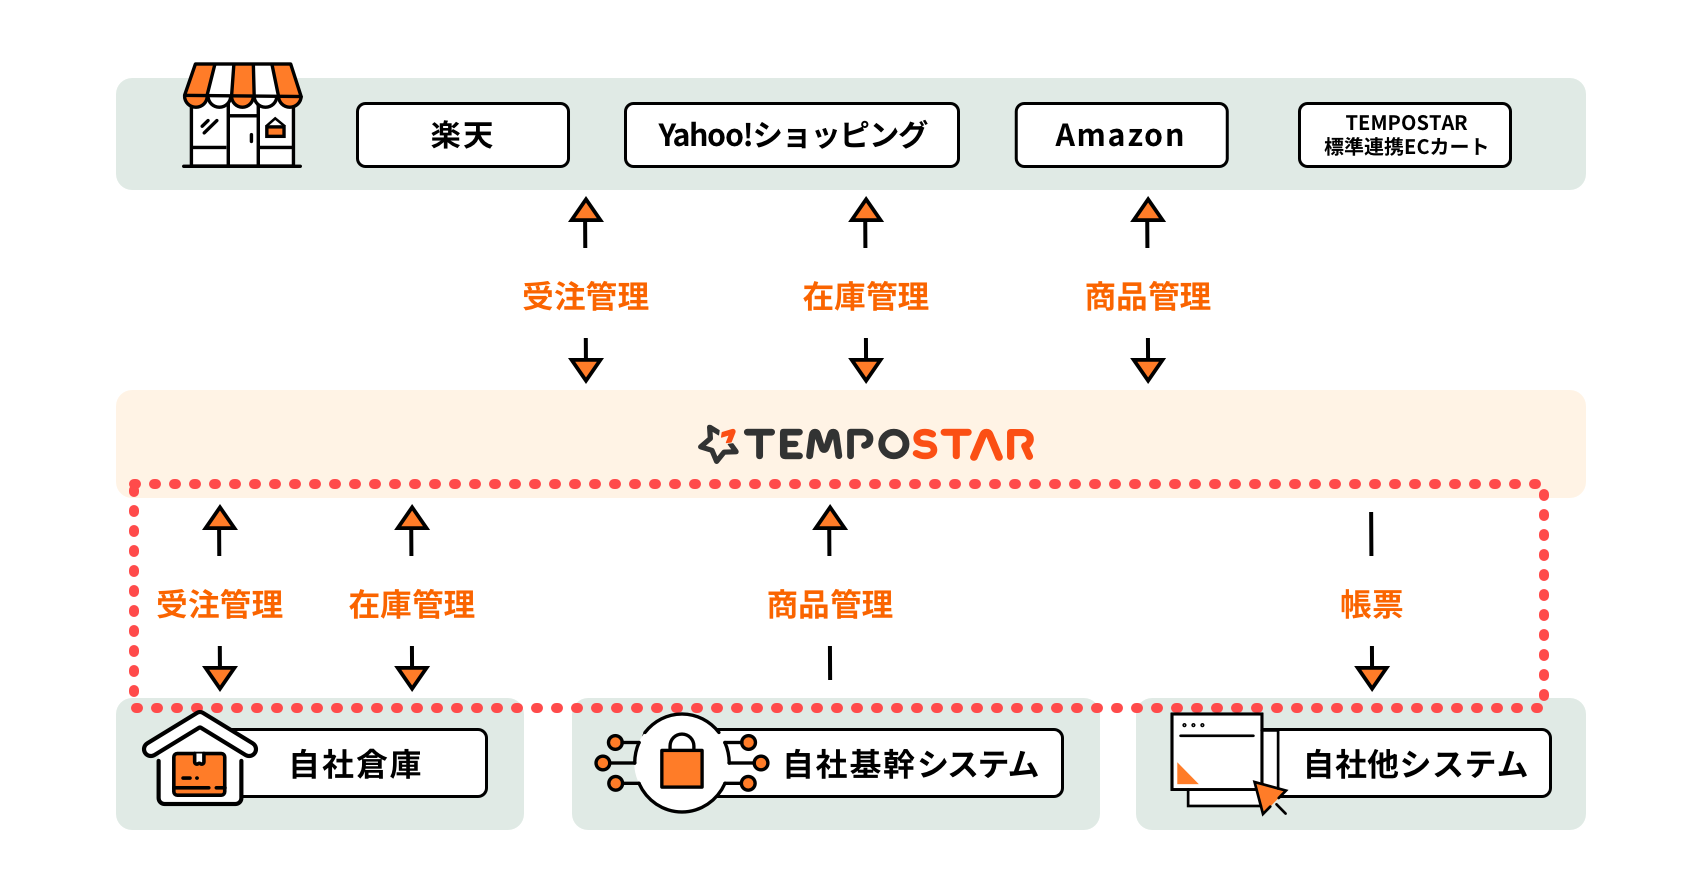 自社基幹システム/自社倉庫システム/自社他システムとのフルカスタマイズによるTEMPOSTAR連携